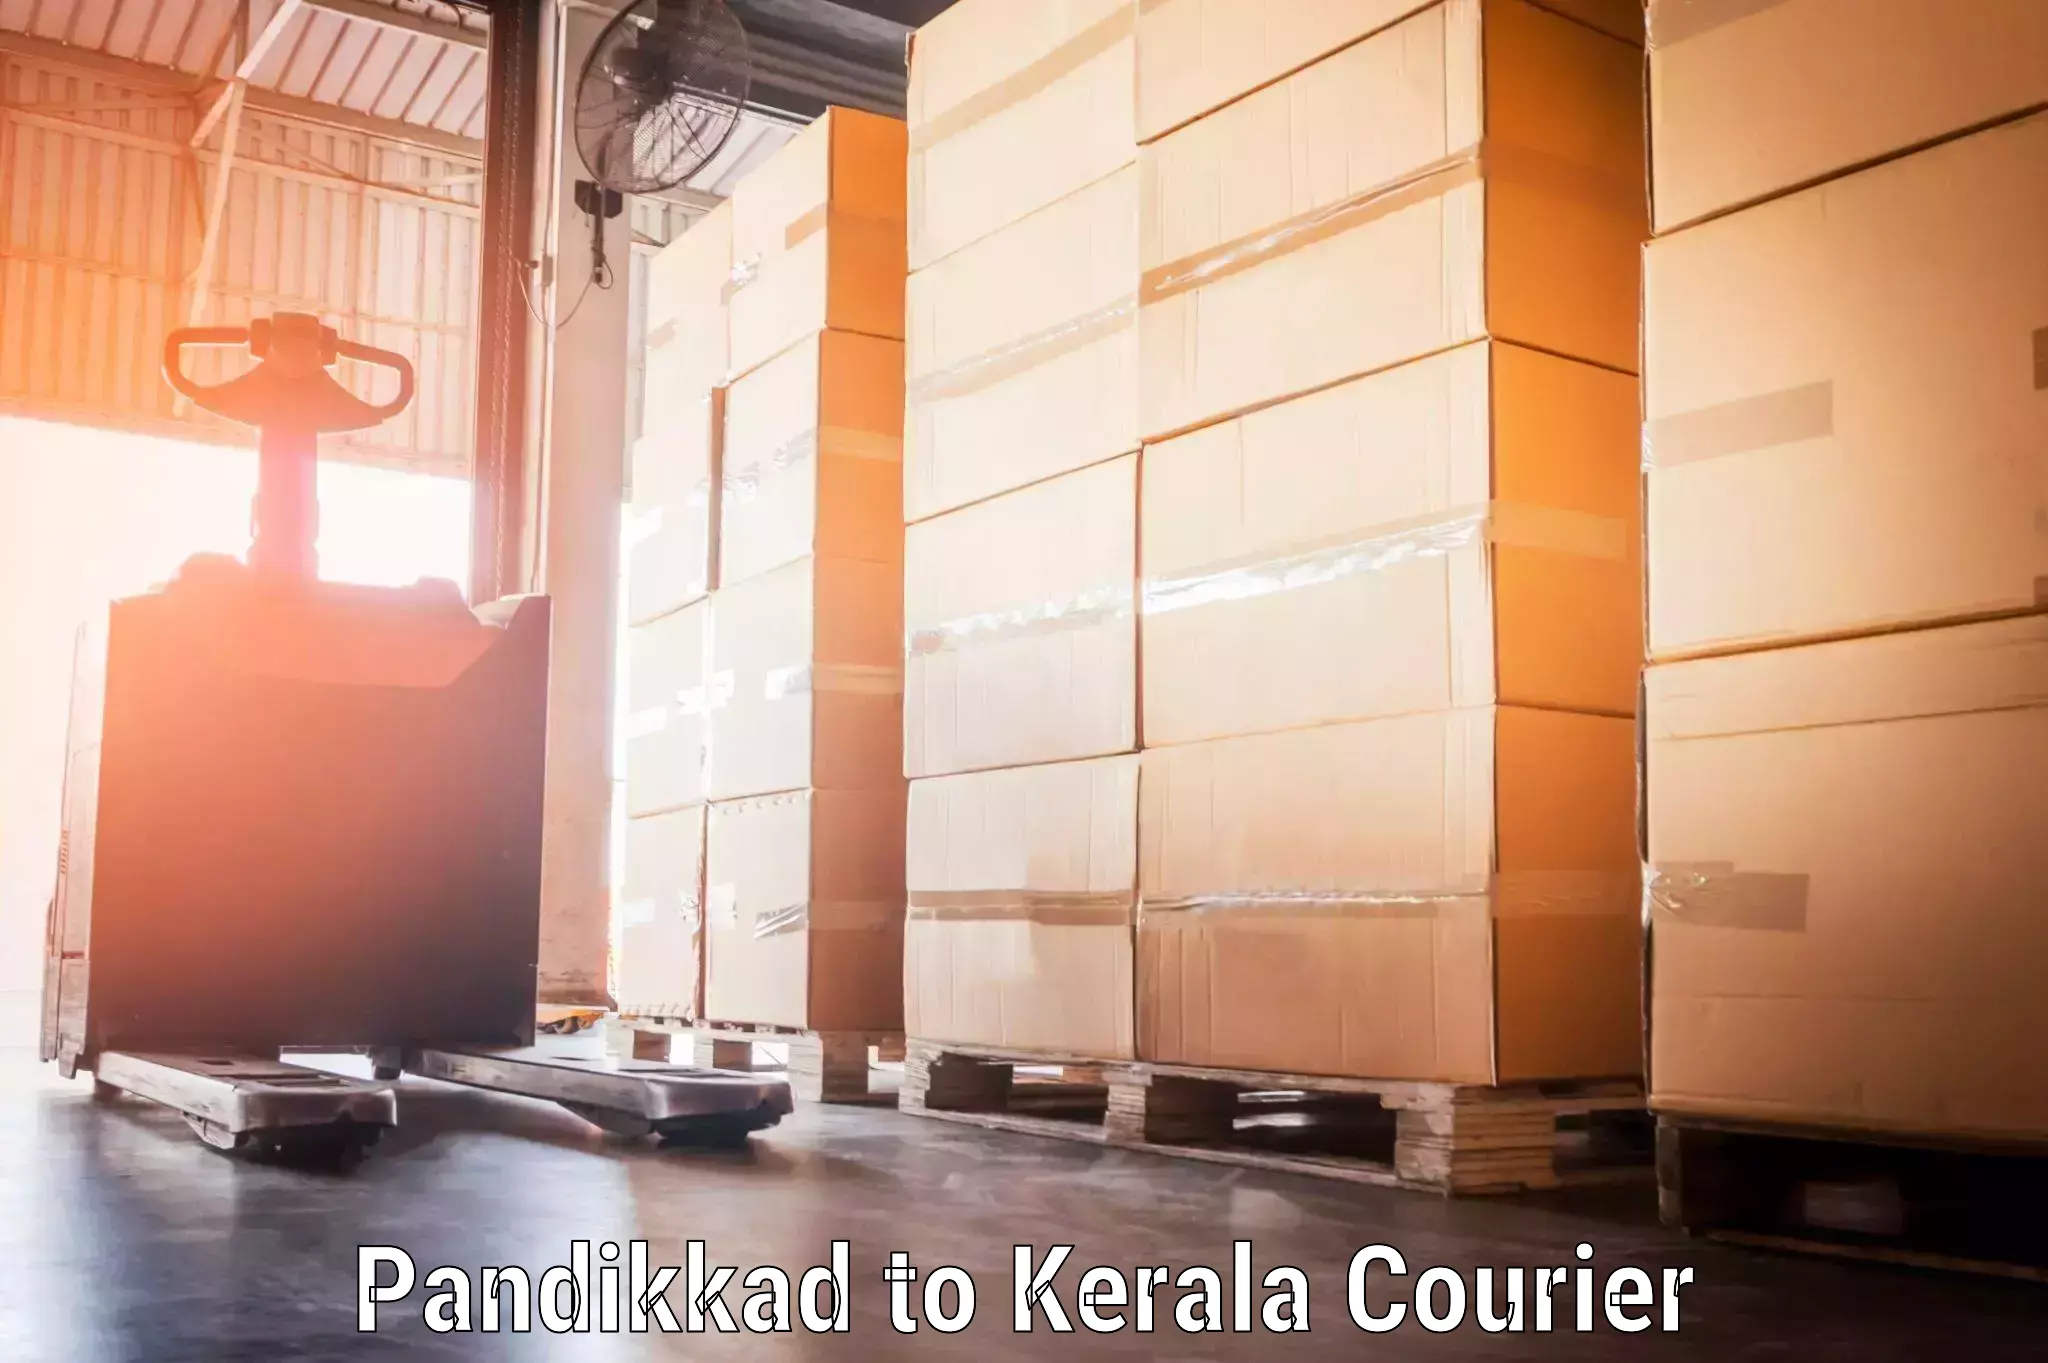 Baggage transport updates in Pandikkad to Kerala